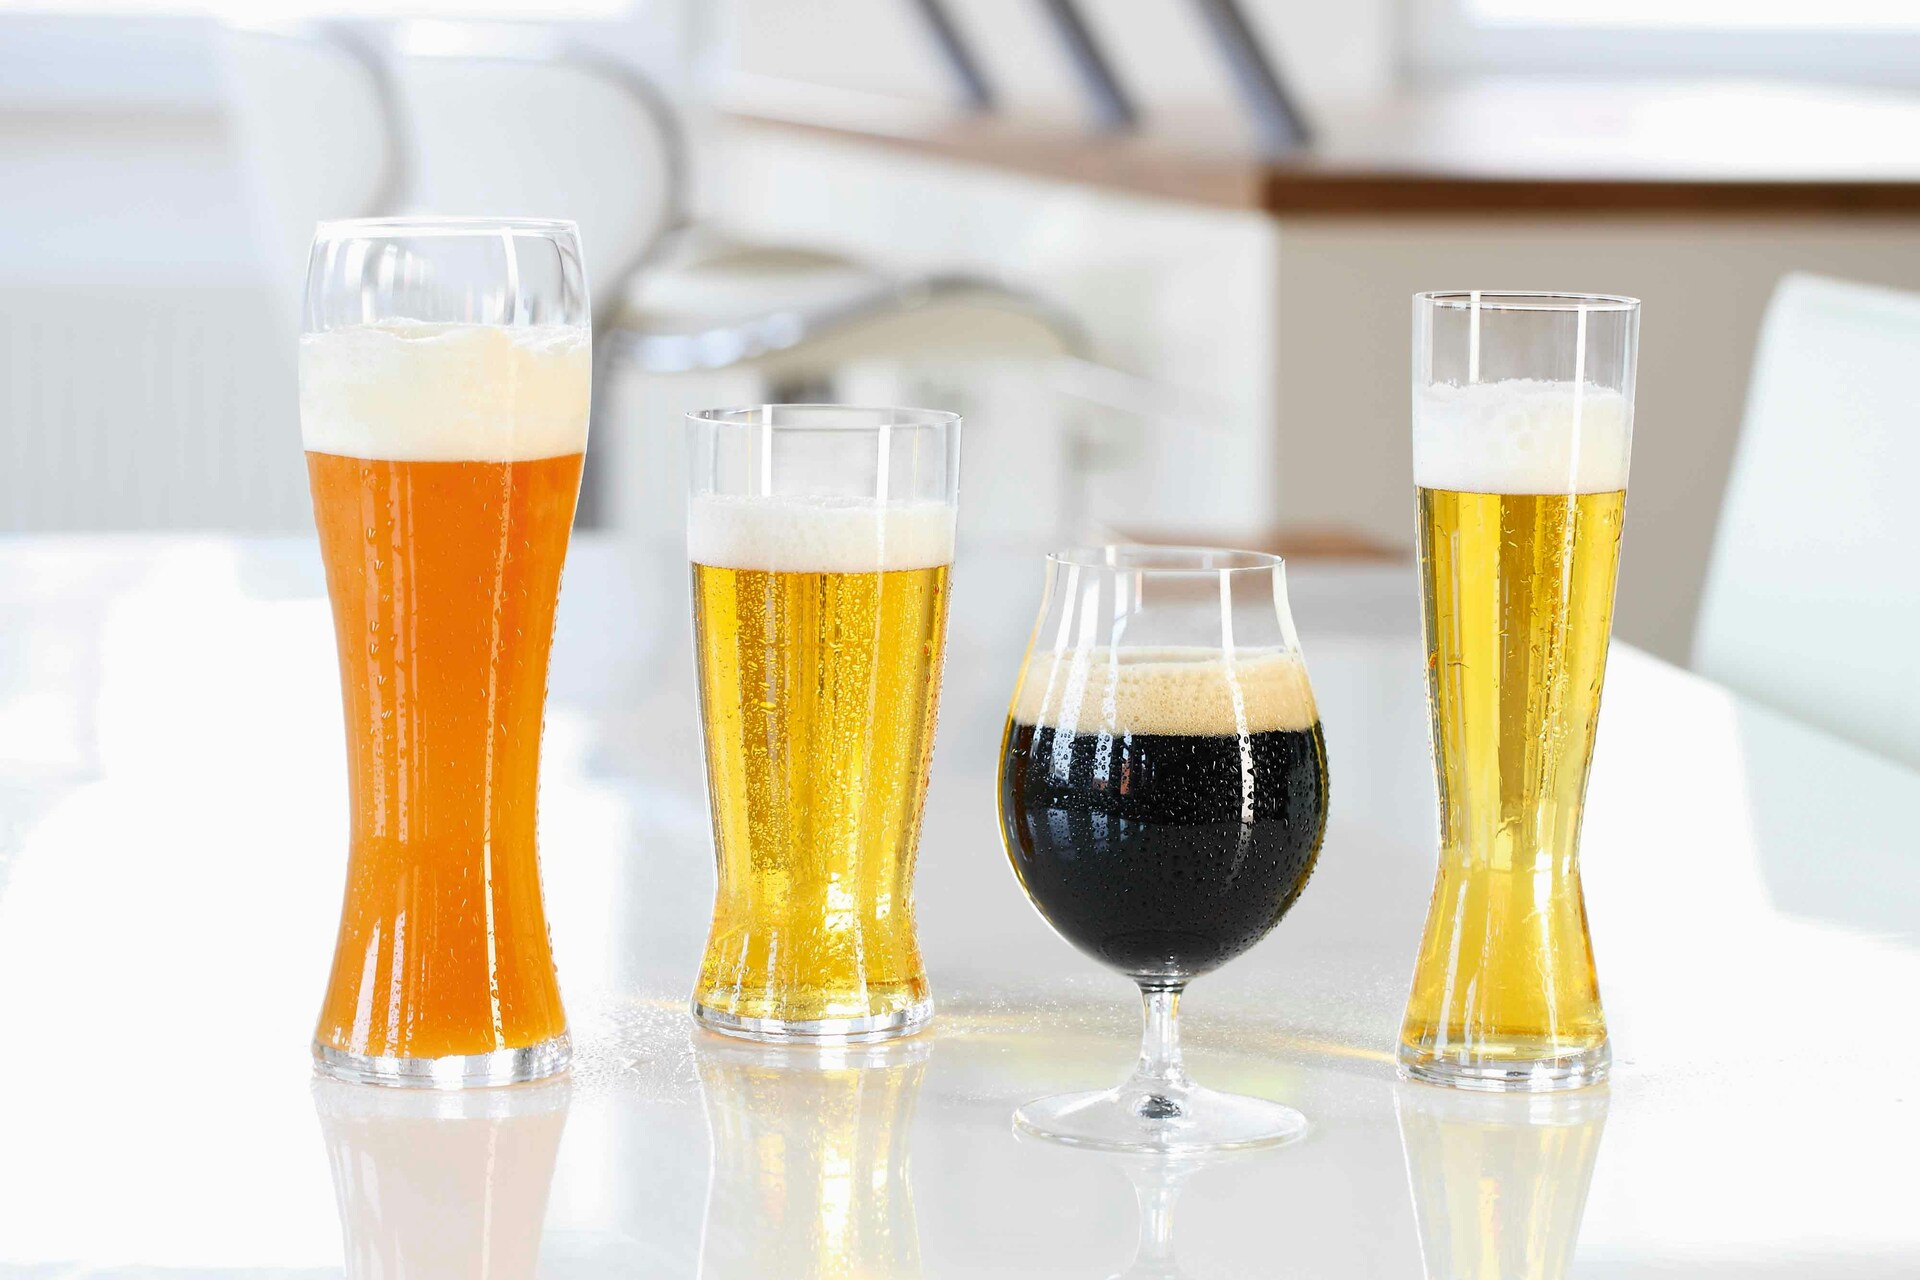 https://royaldesign.com/image/2/spiegelau-beer-classics-beer-glass-set-of-4-44-cl-5